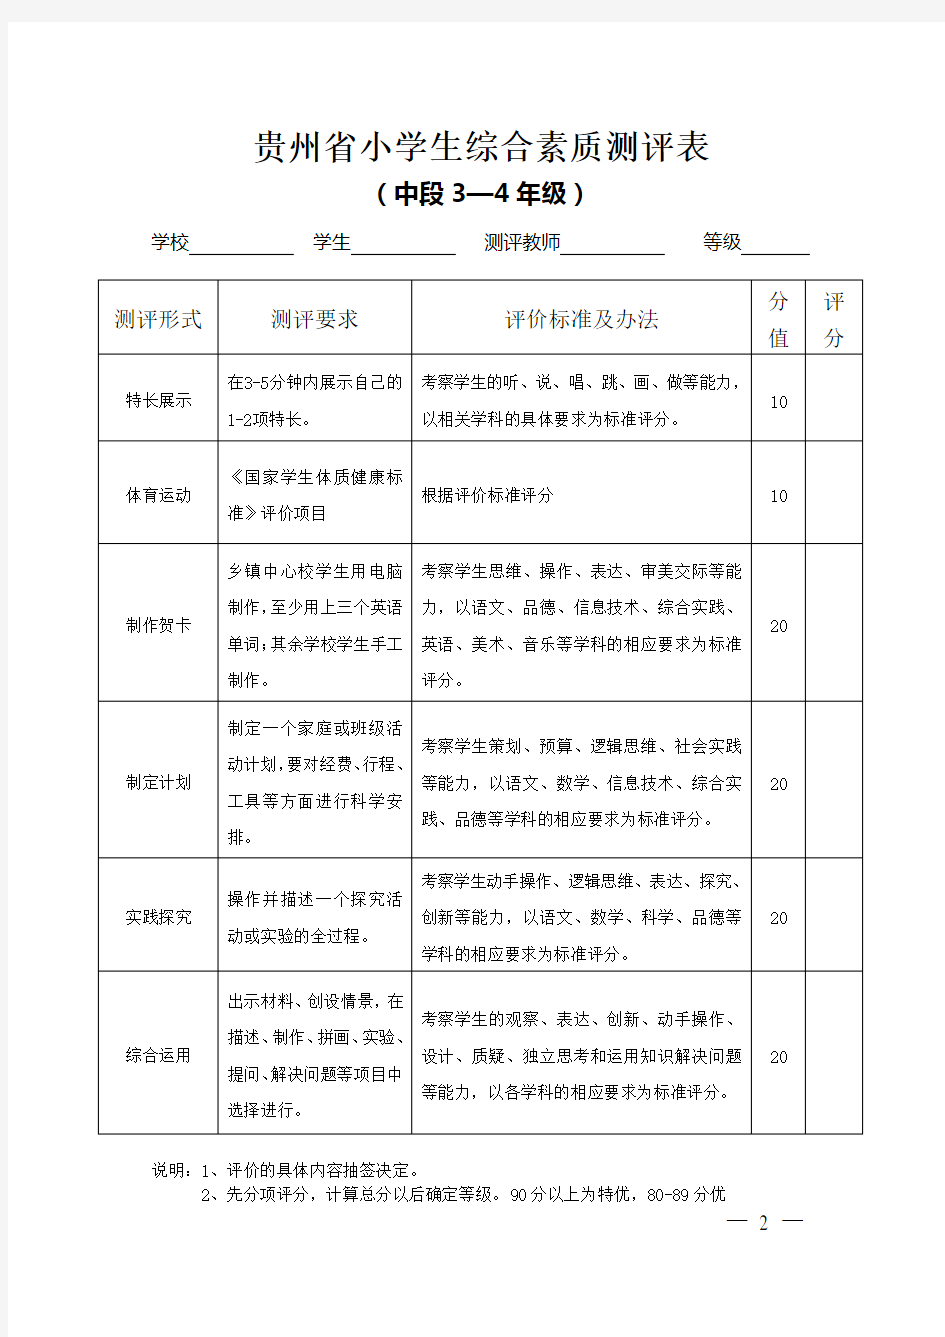 贵州省小学生综合素质测评表